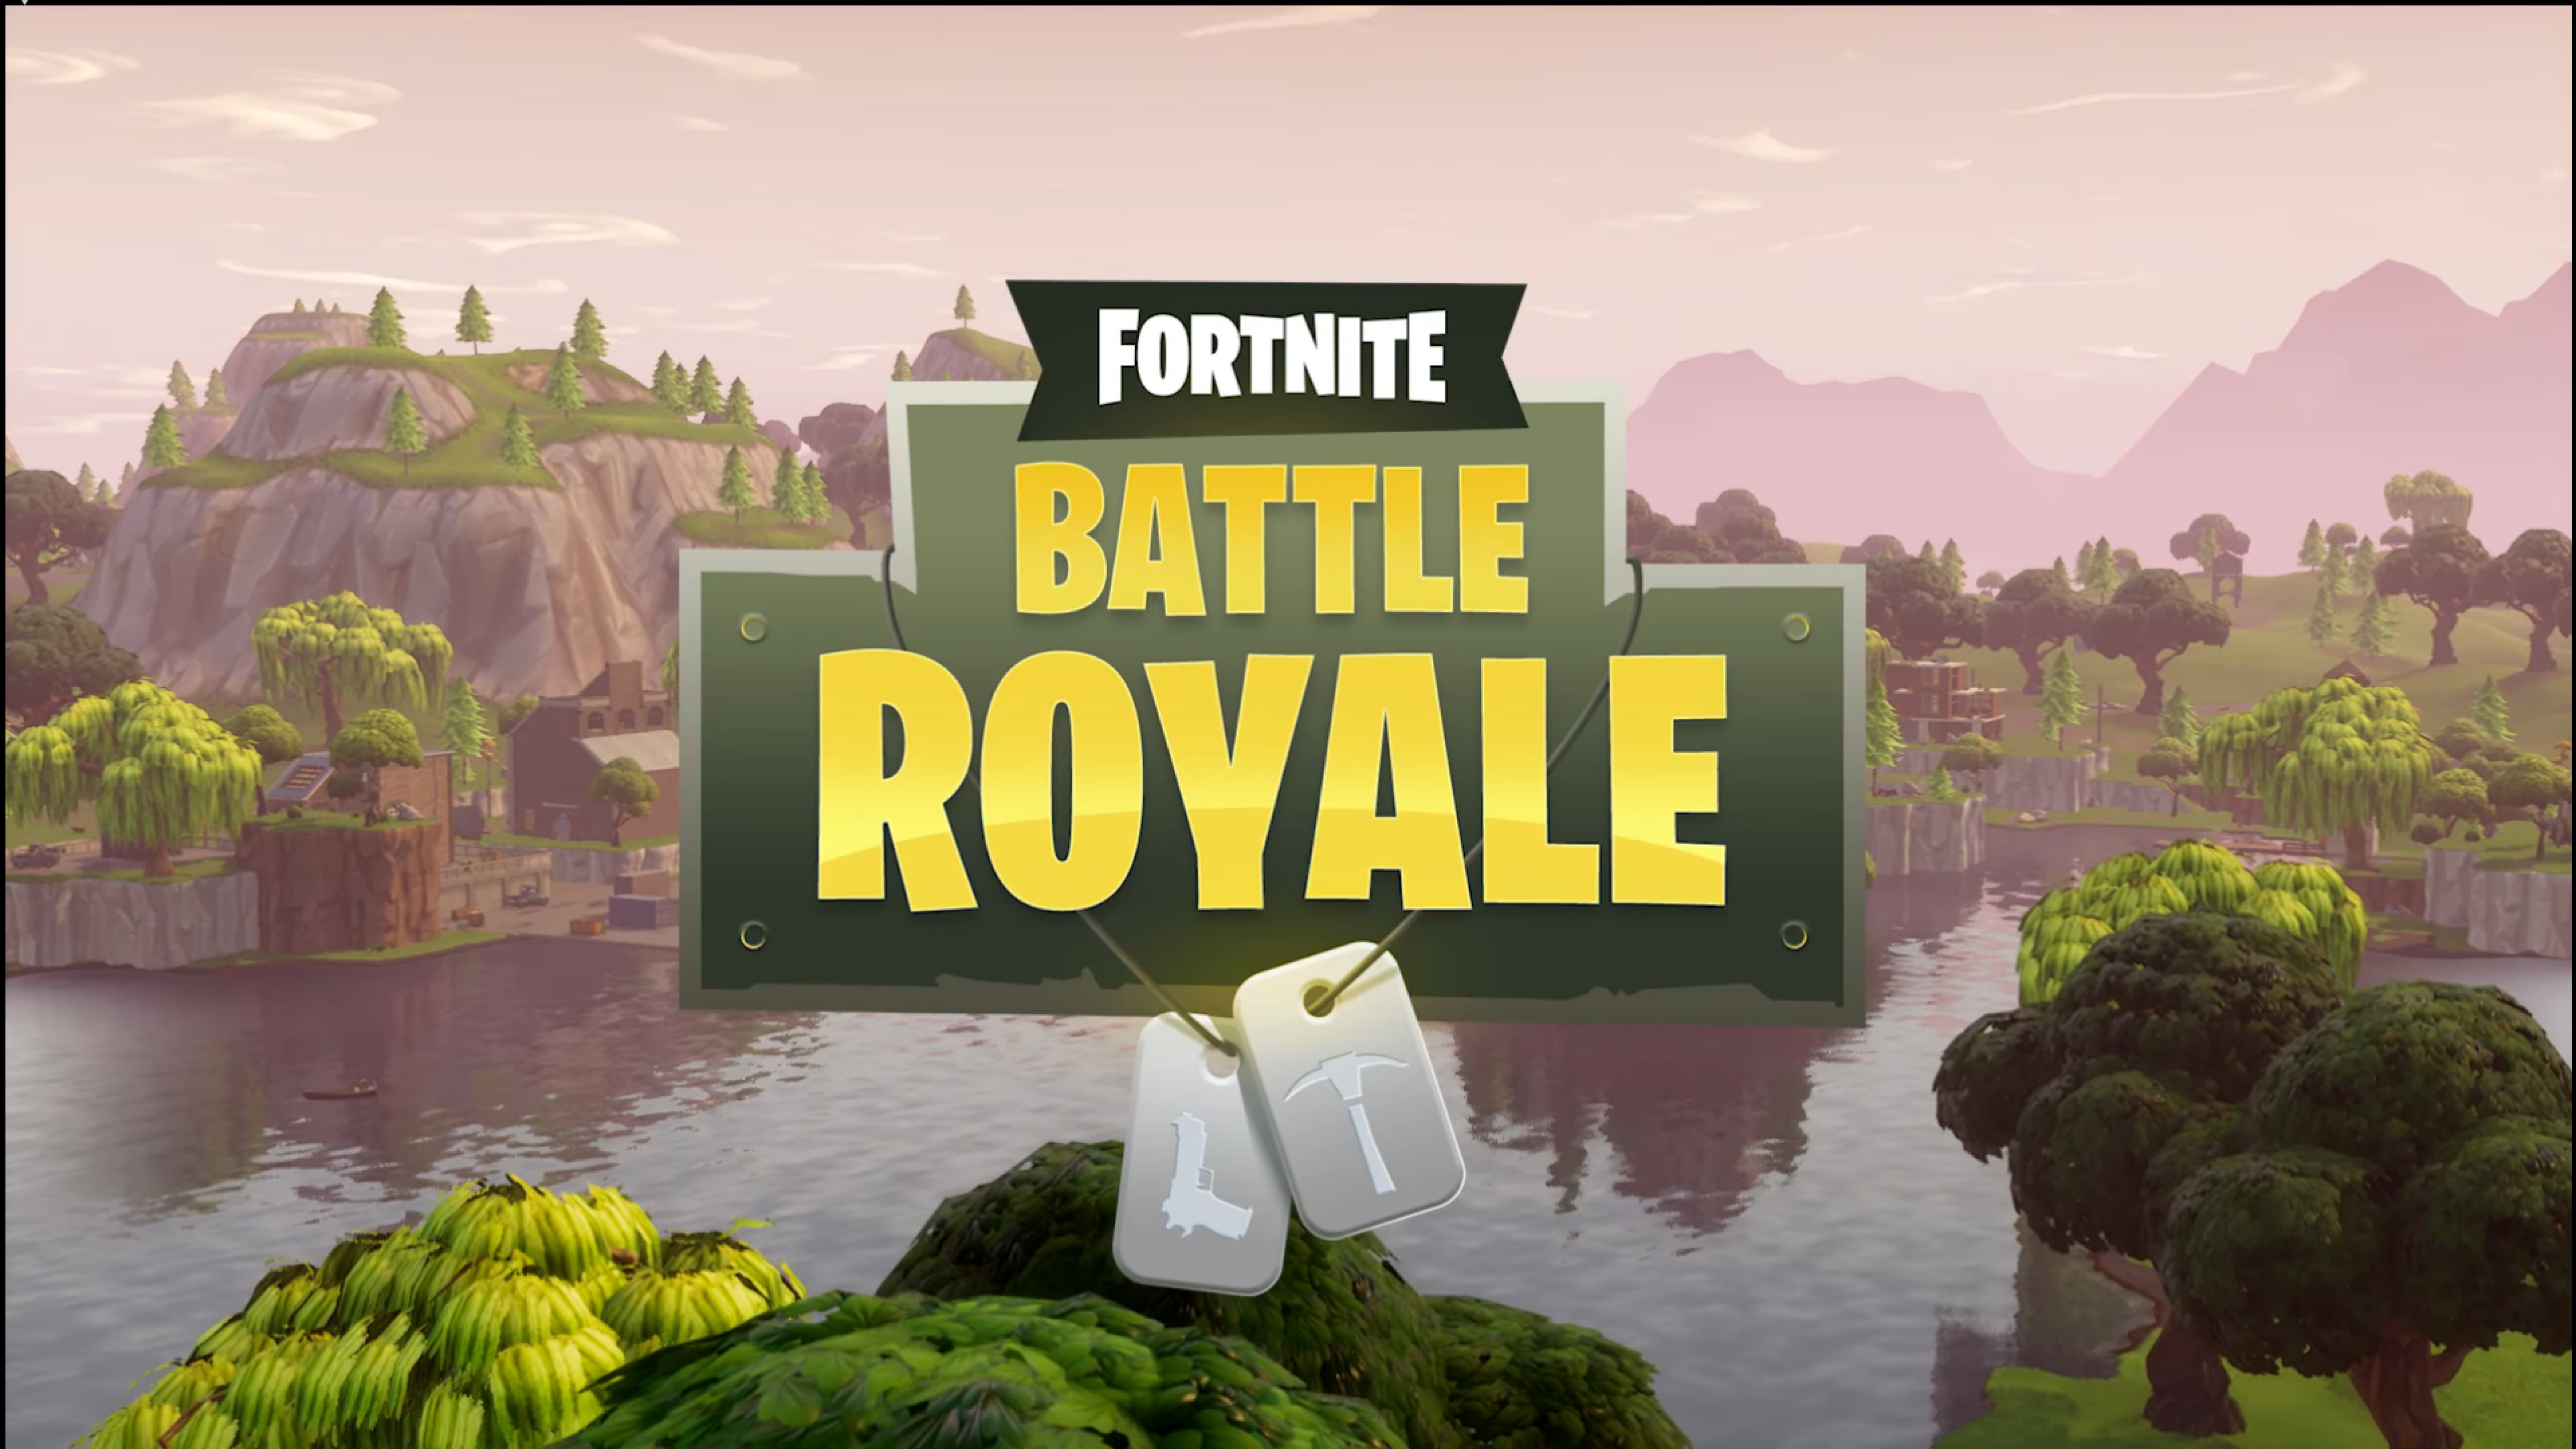 Fortnite Battle Royale Game Poster, Full HD Wallpaper